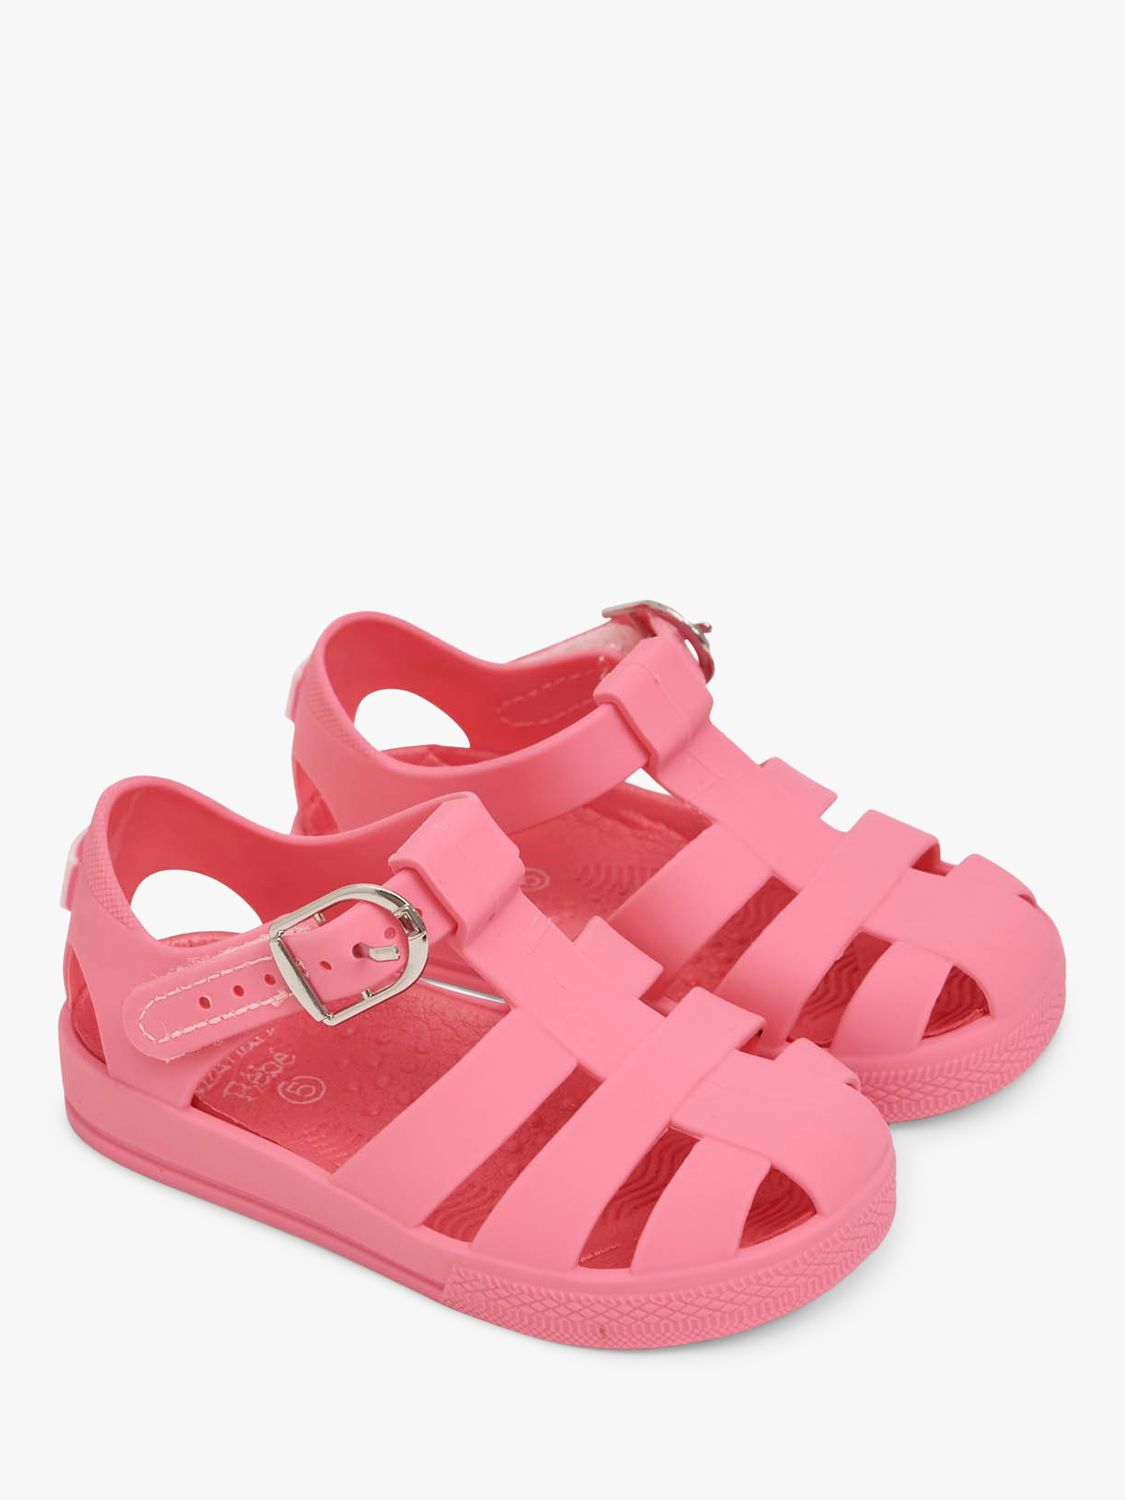 JoJo Maman Bébé Kids' Jelly Buckle Sandals, Pink, 8 Jnr